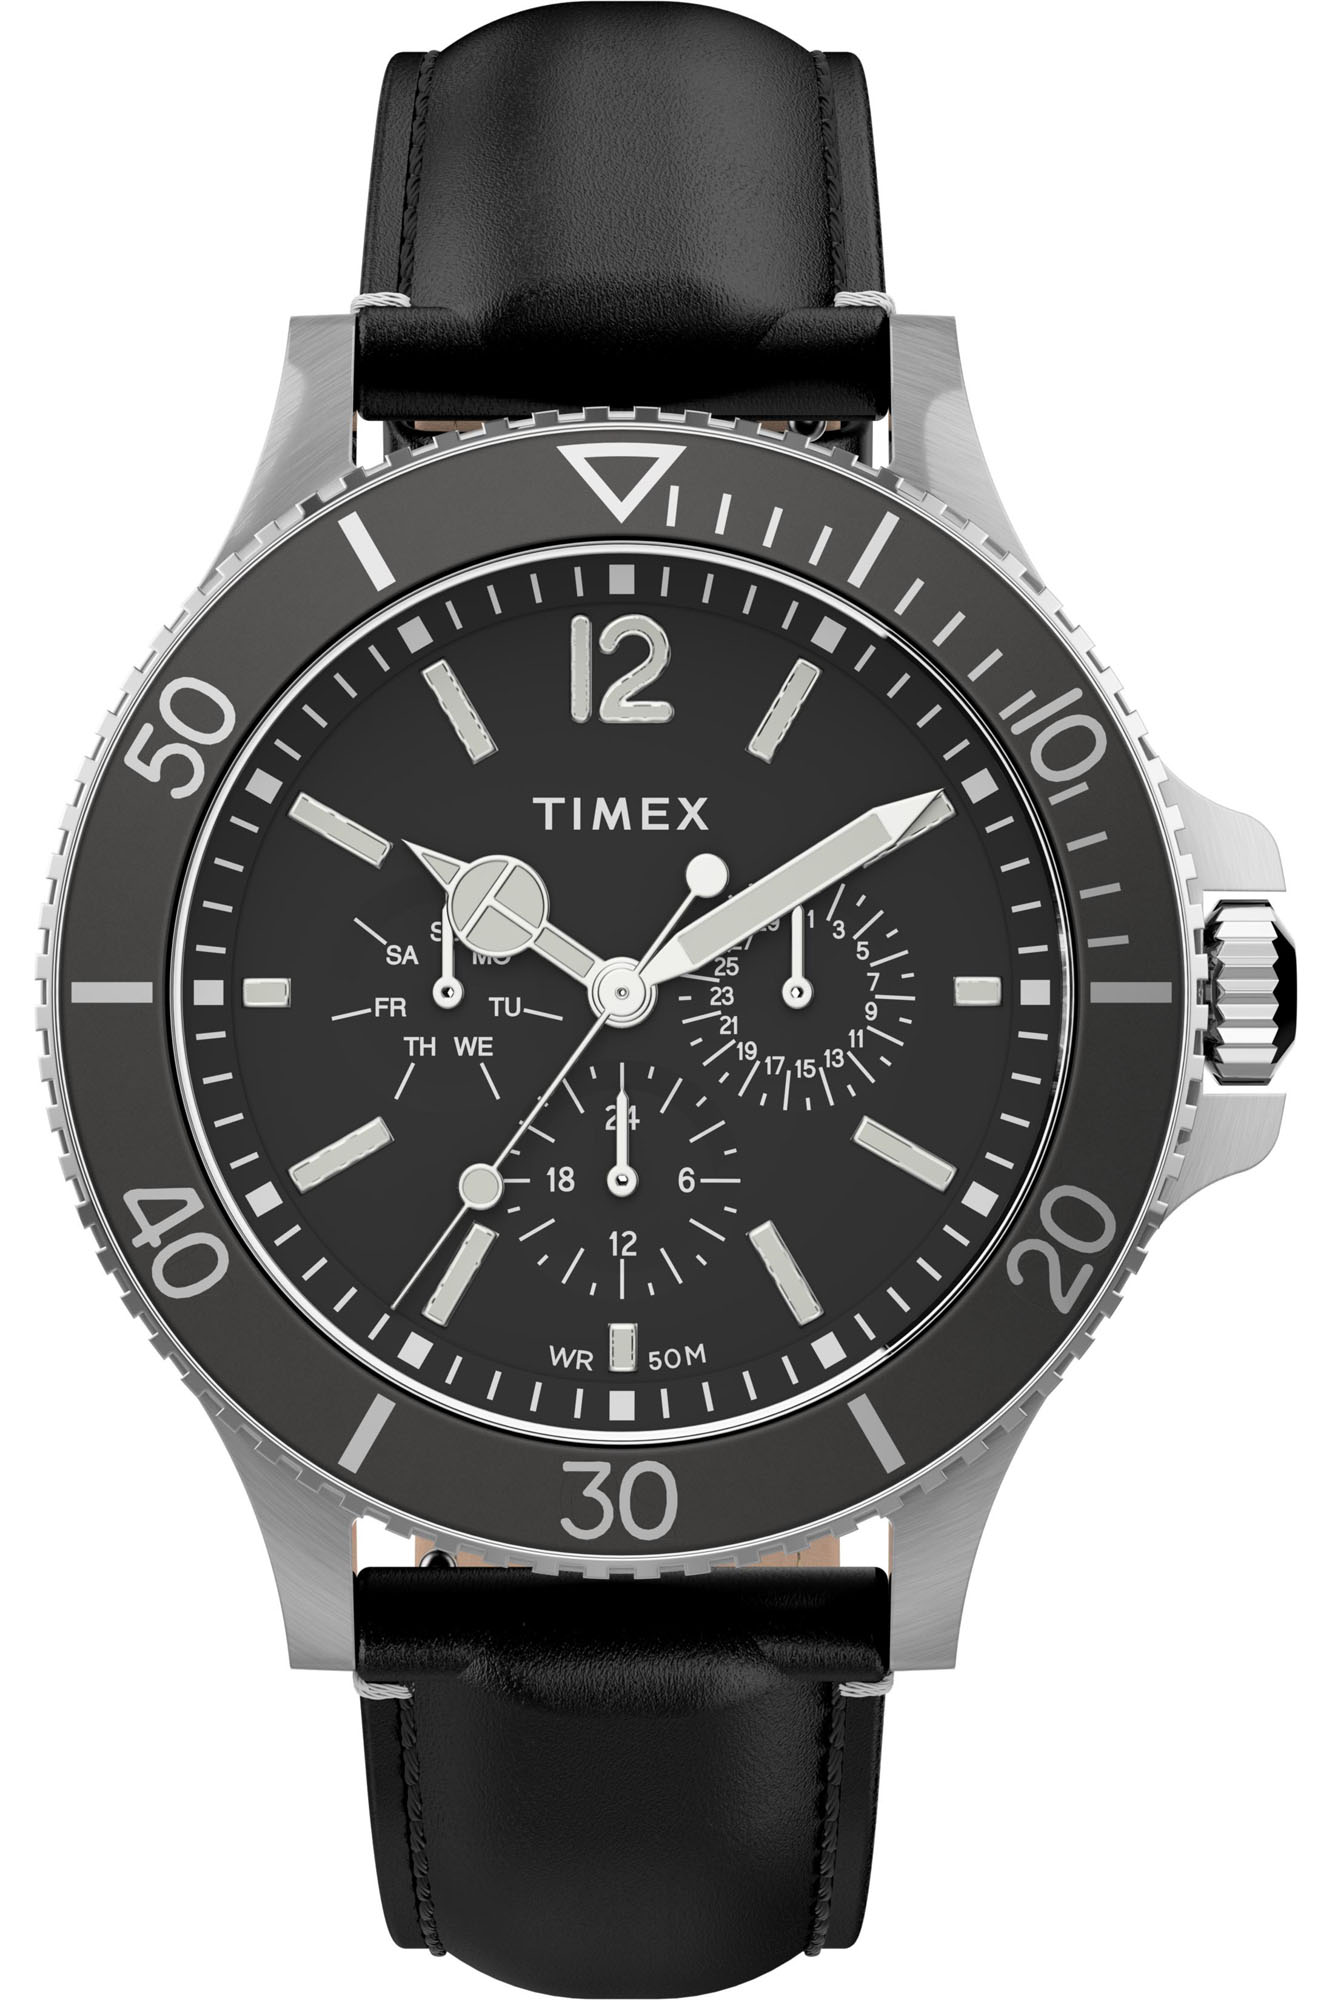 Watch Timex tw2u12900